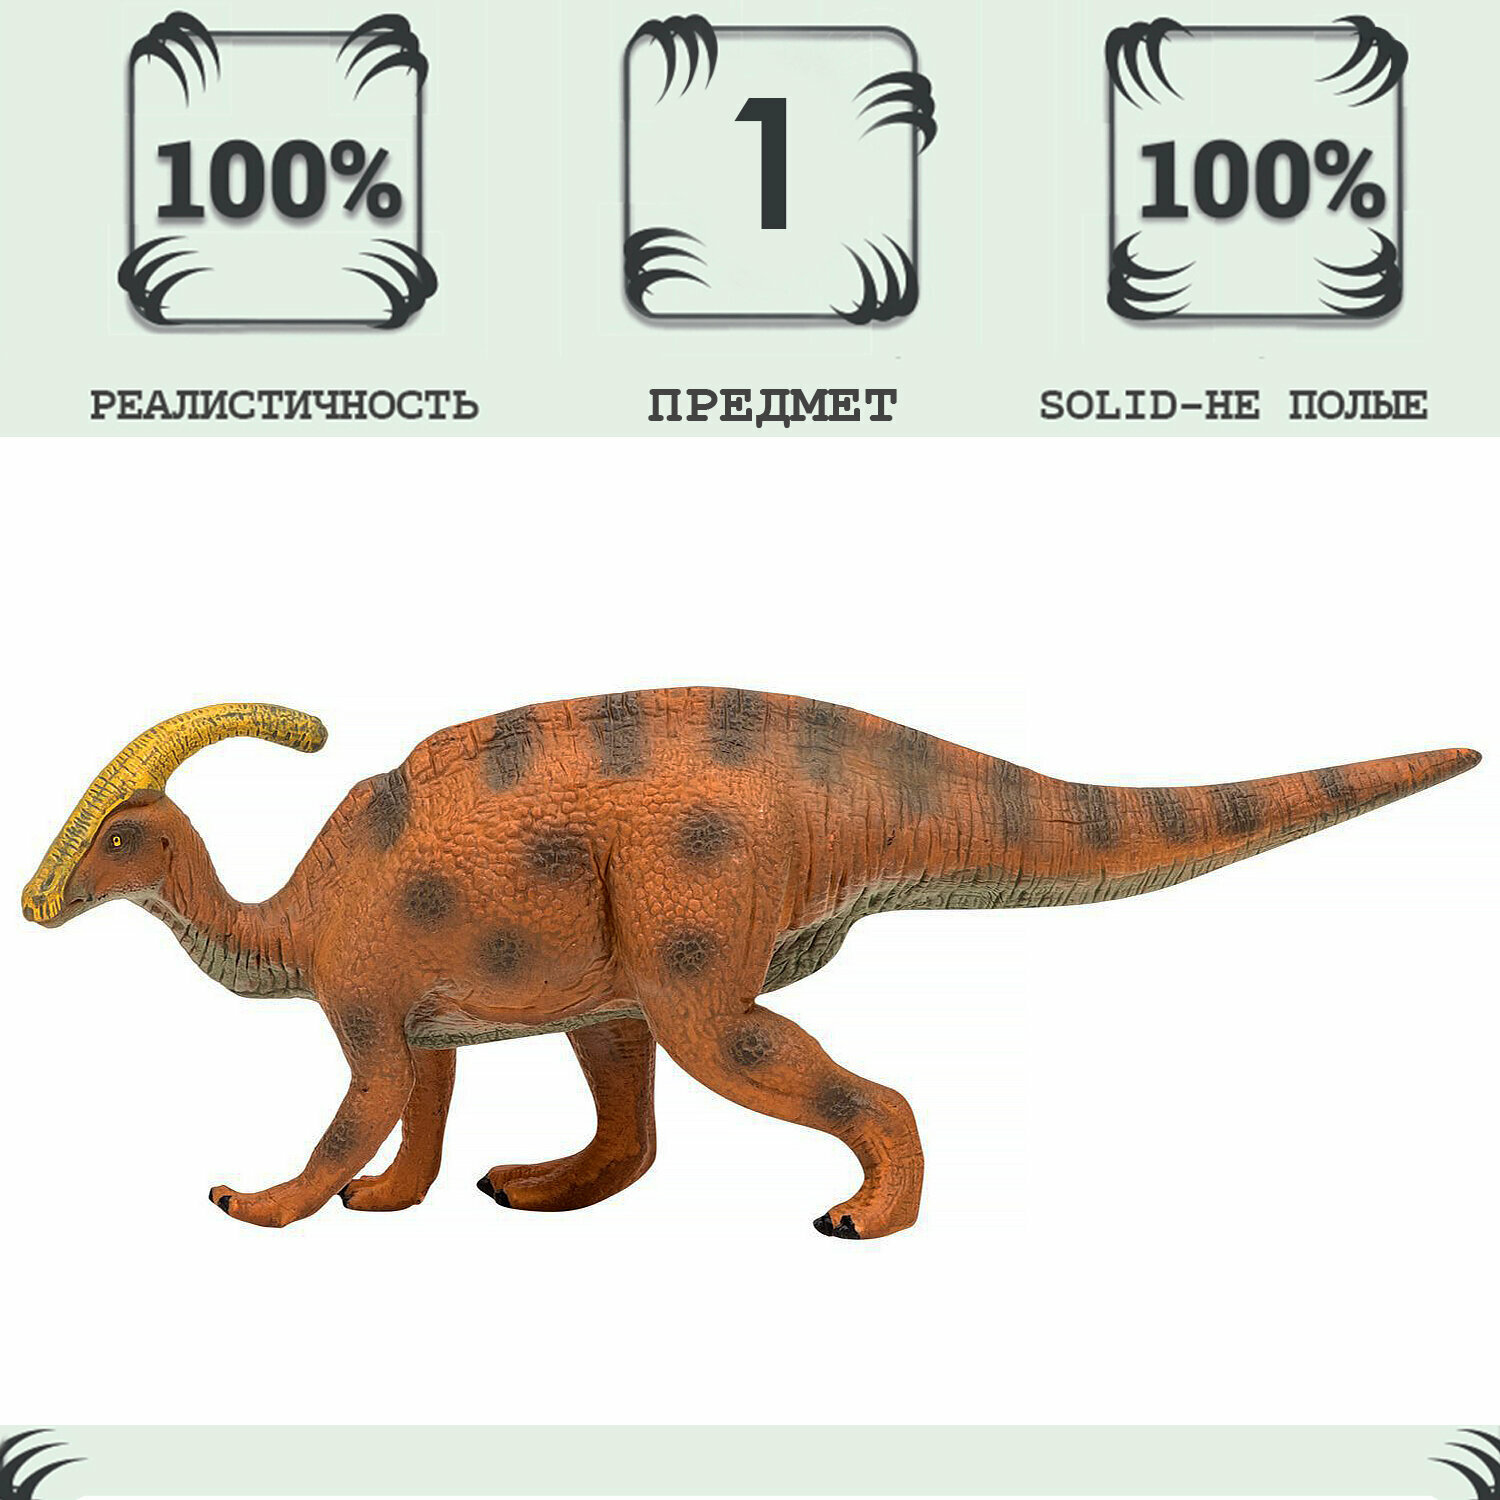 Игрушка динозавр серии "Мир динозавров" Паразауролоф, фигурка длиной 24 см